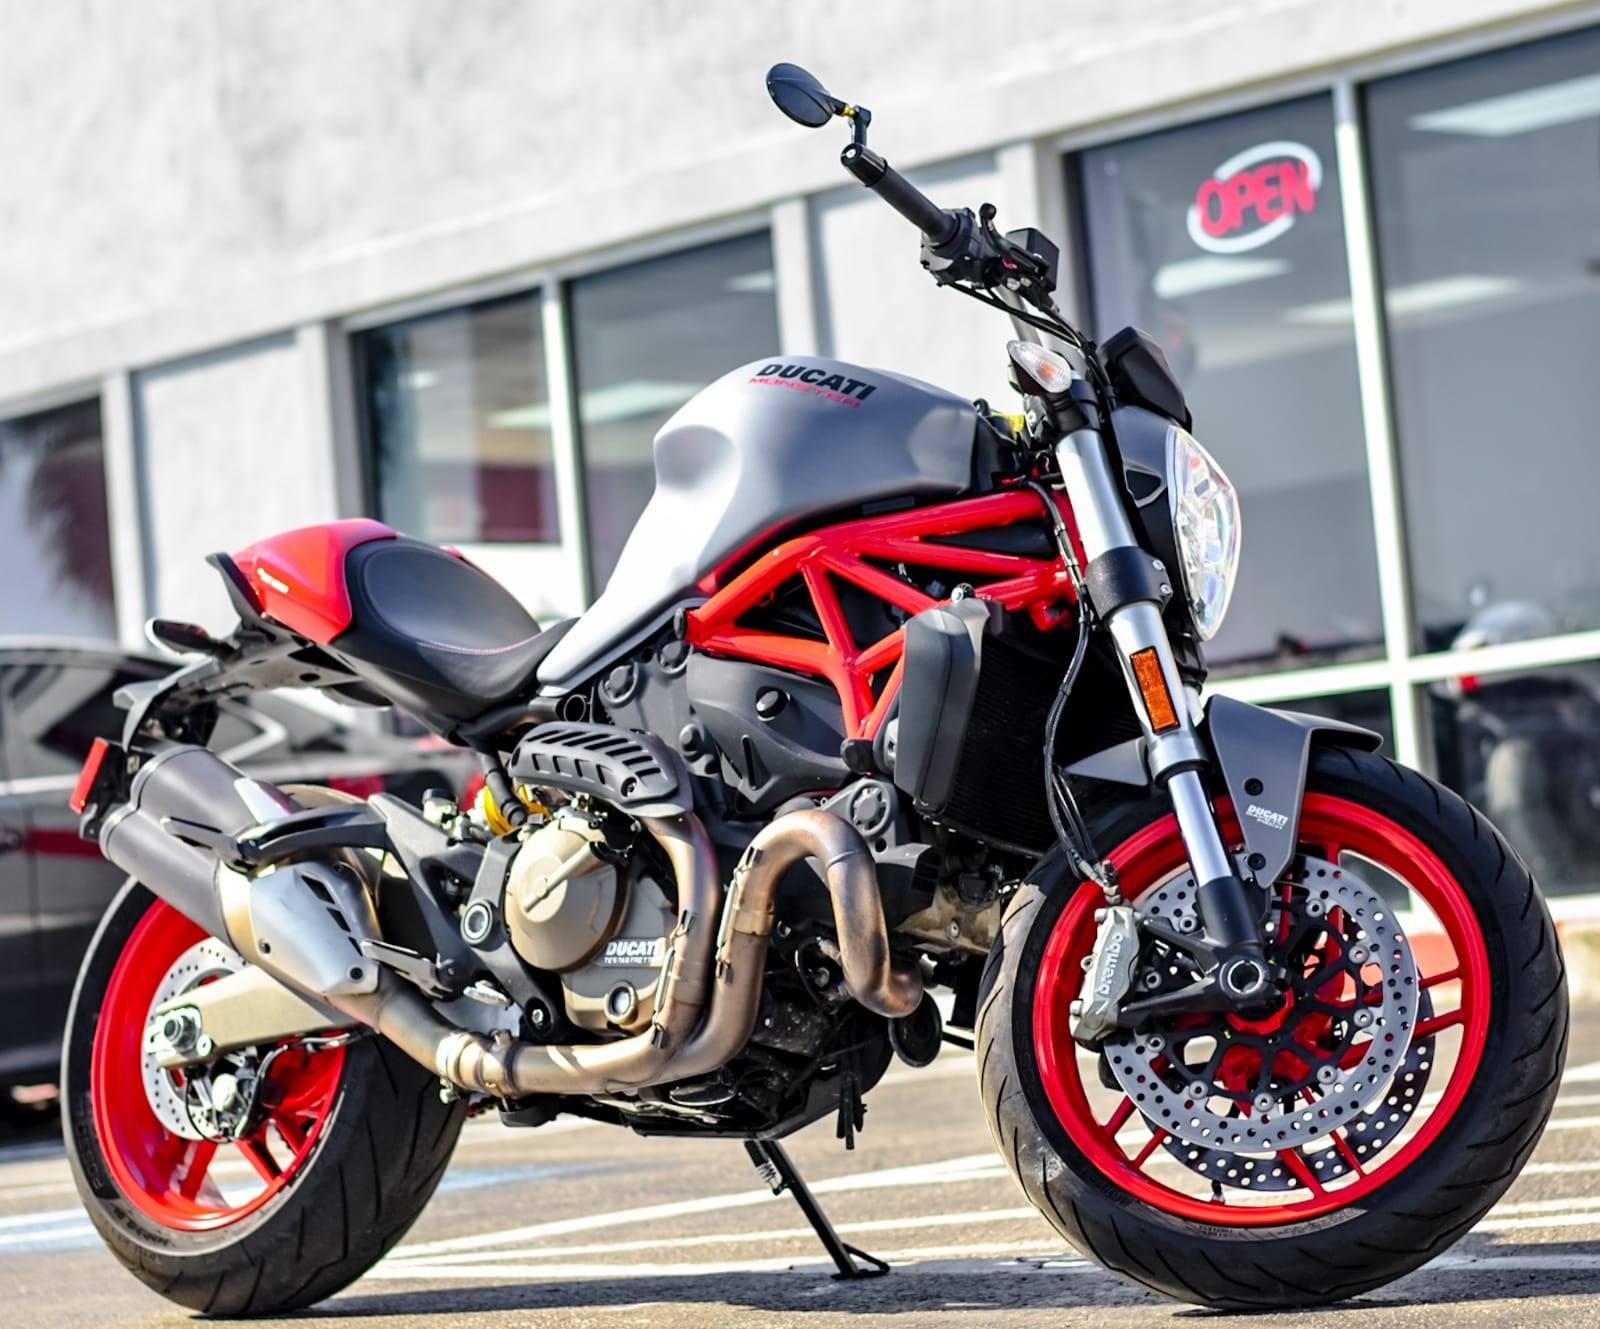 Used 17 Ducati Monster 1 Motorcycles In Houston Tx Stock Number 100u